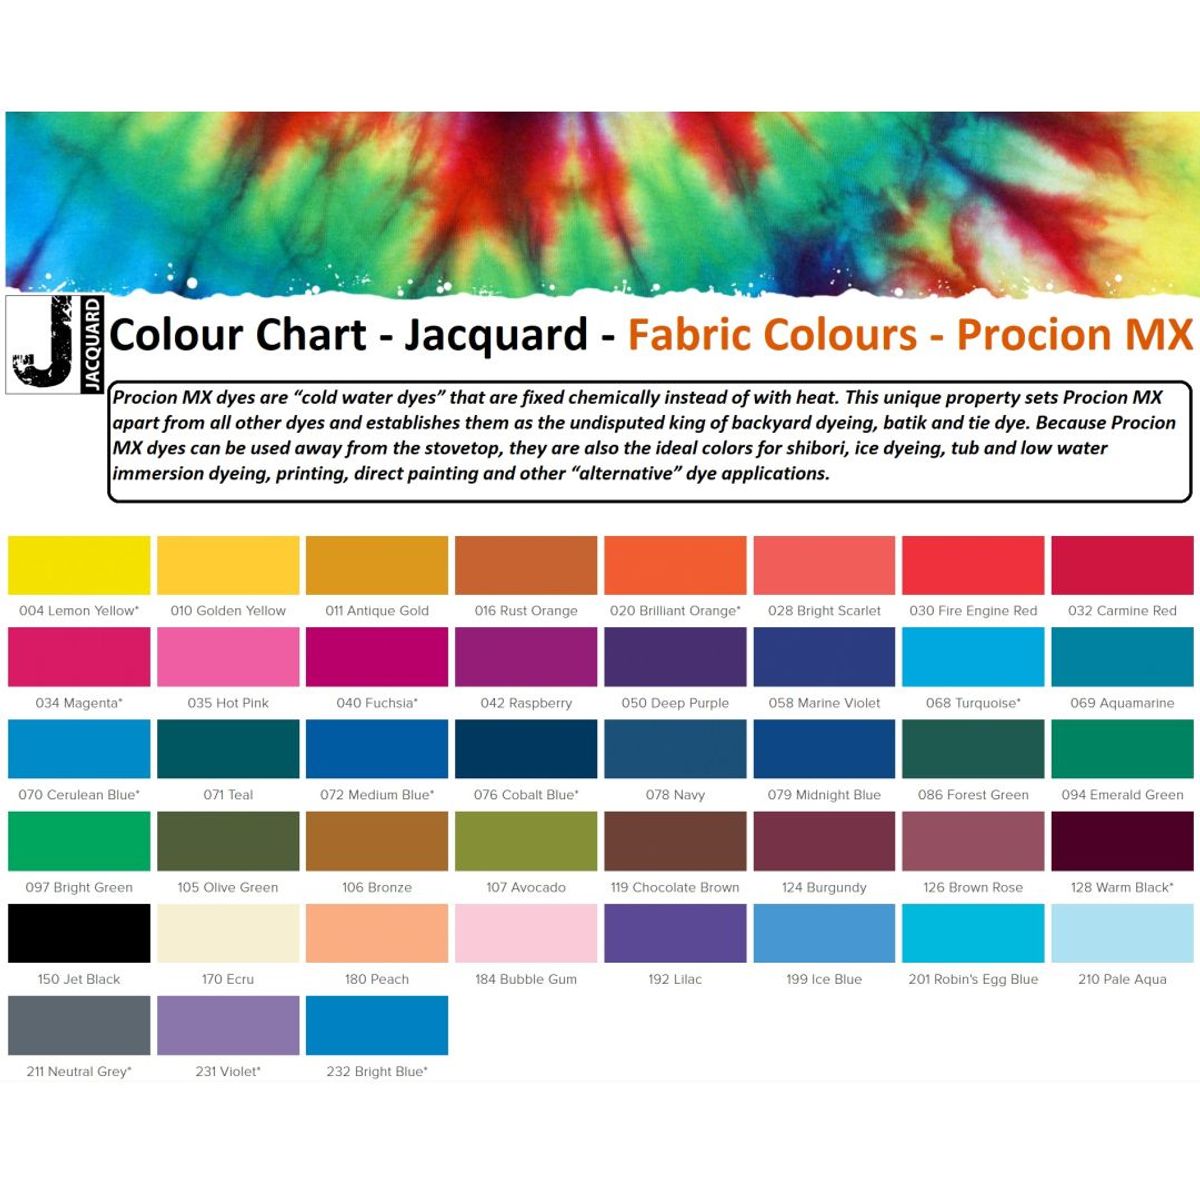 Jacquard - Procion MX Dye - Fabric Textile - Violet - 231